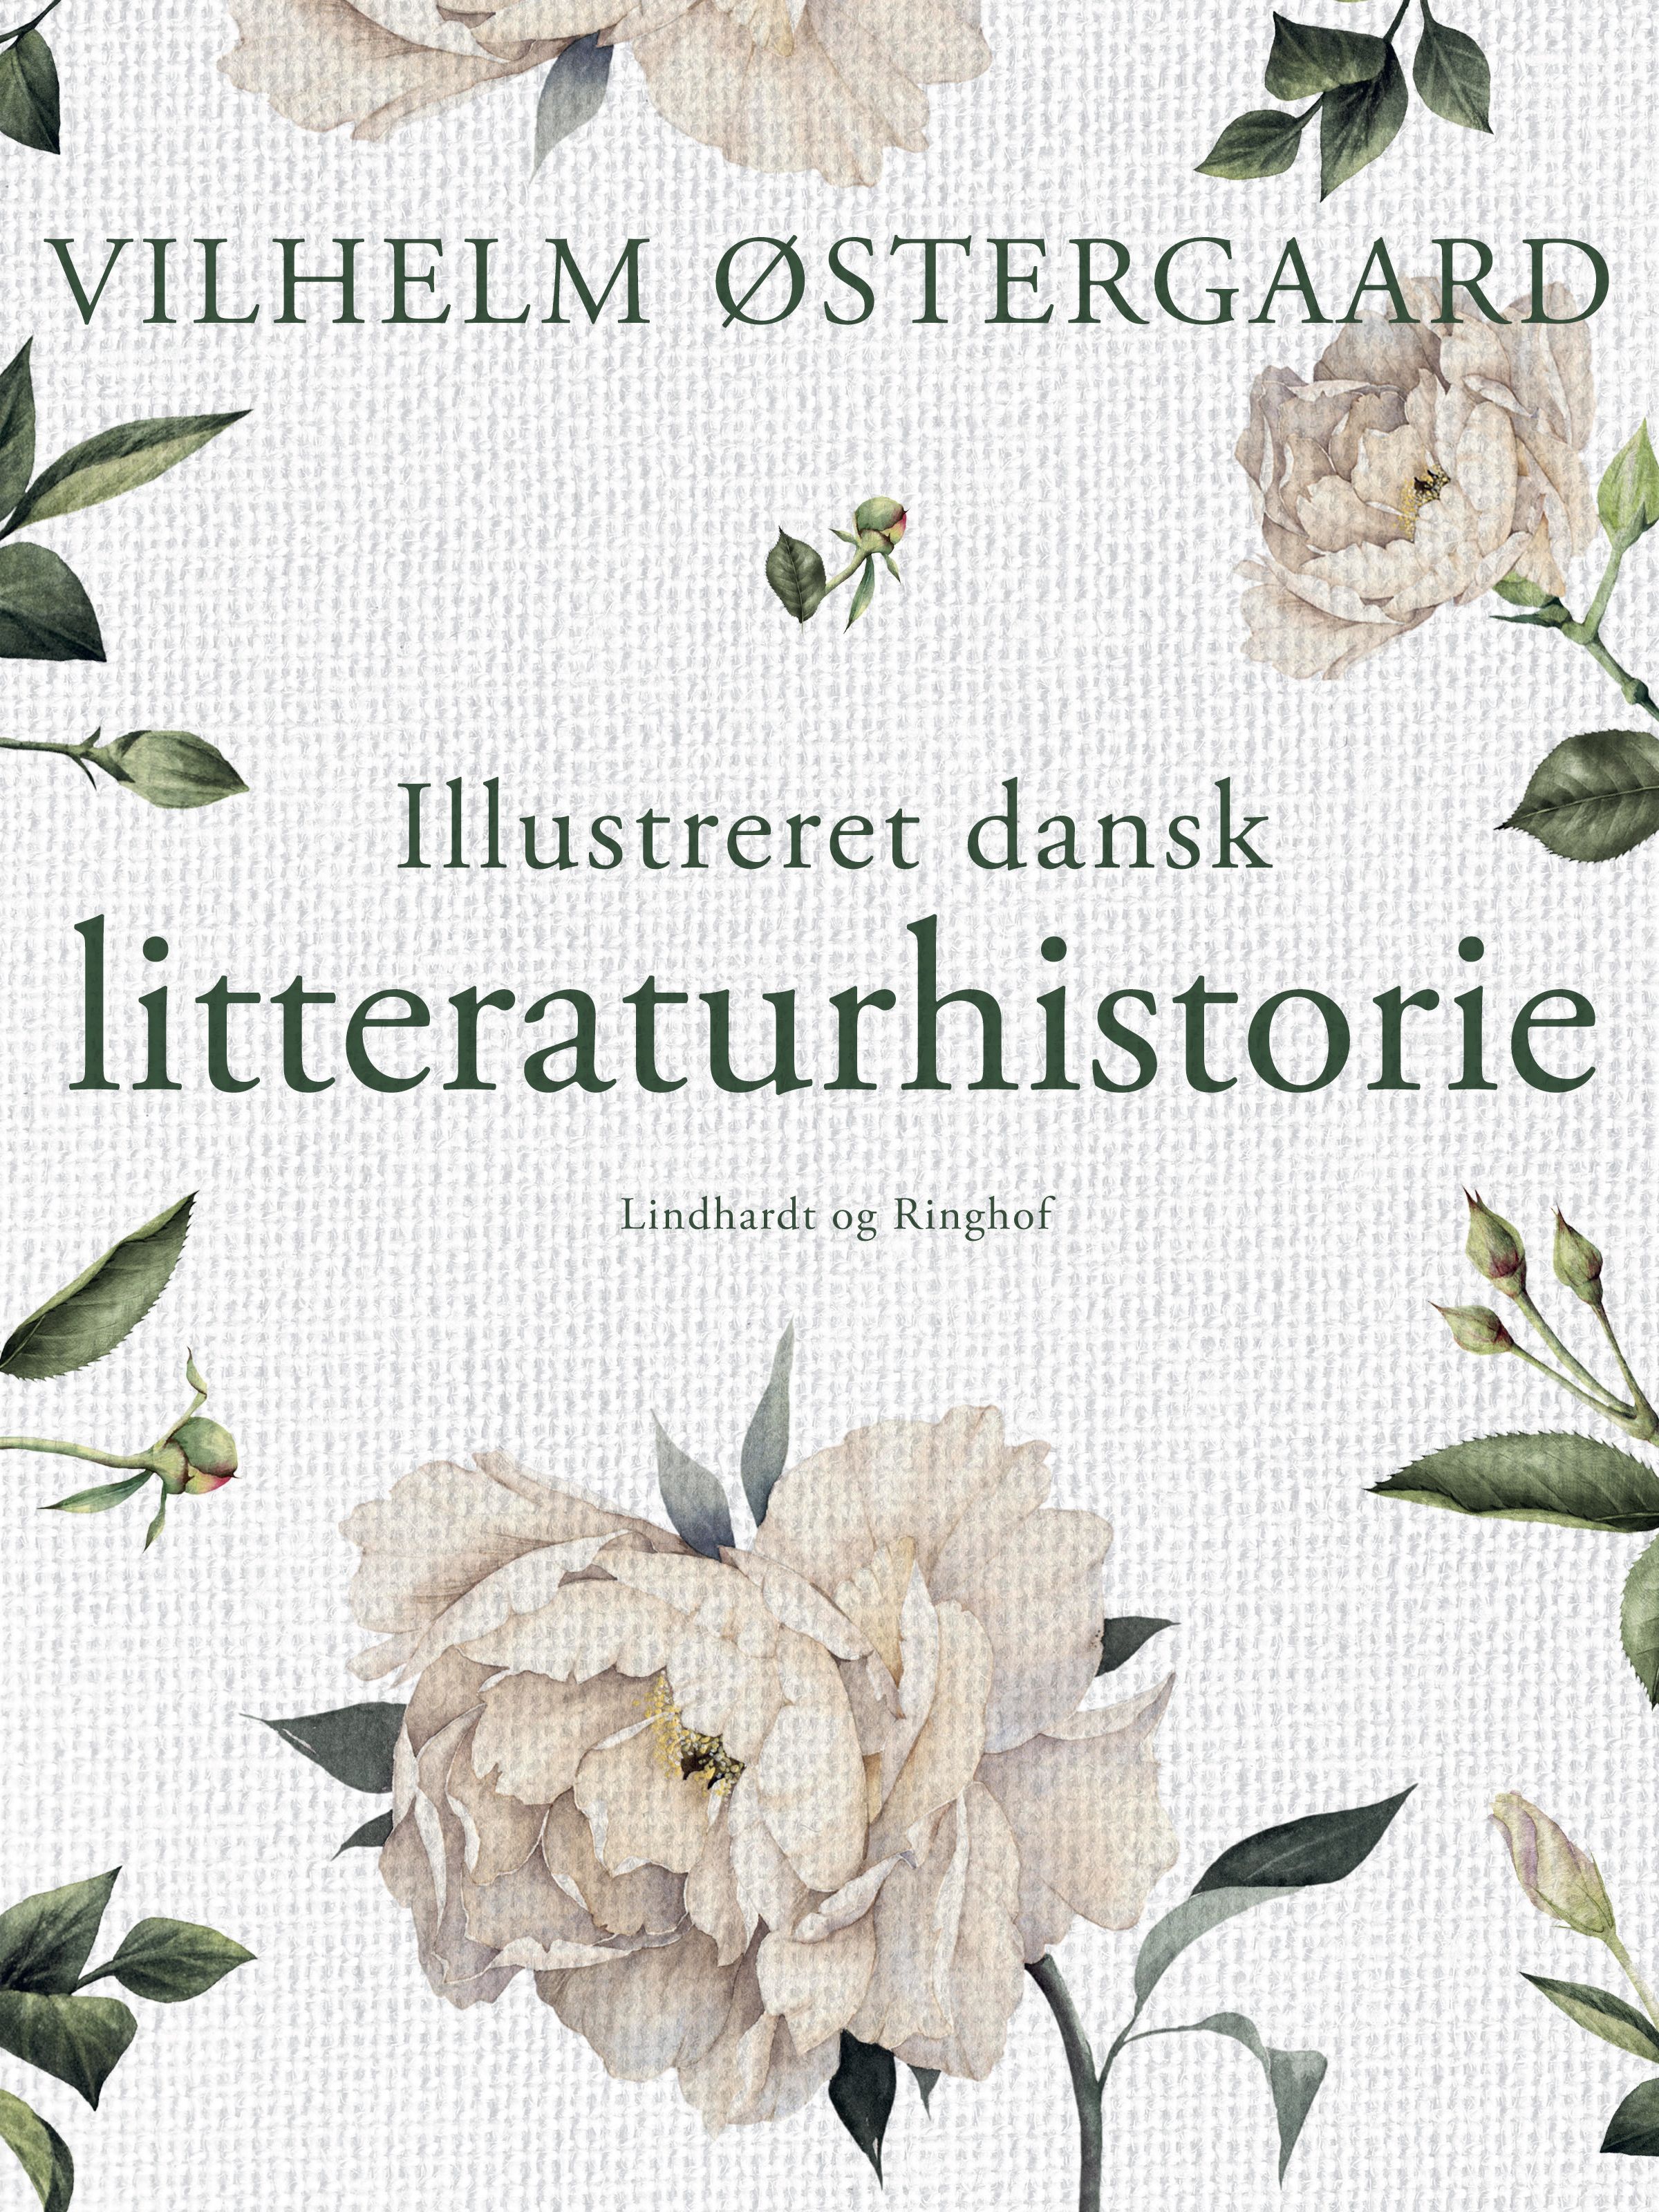 Illustreret dansk litteraturhistorie, e-bok av Vilhelm Østergaard